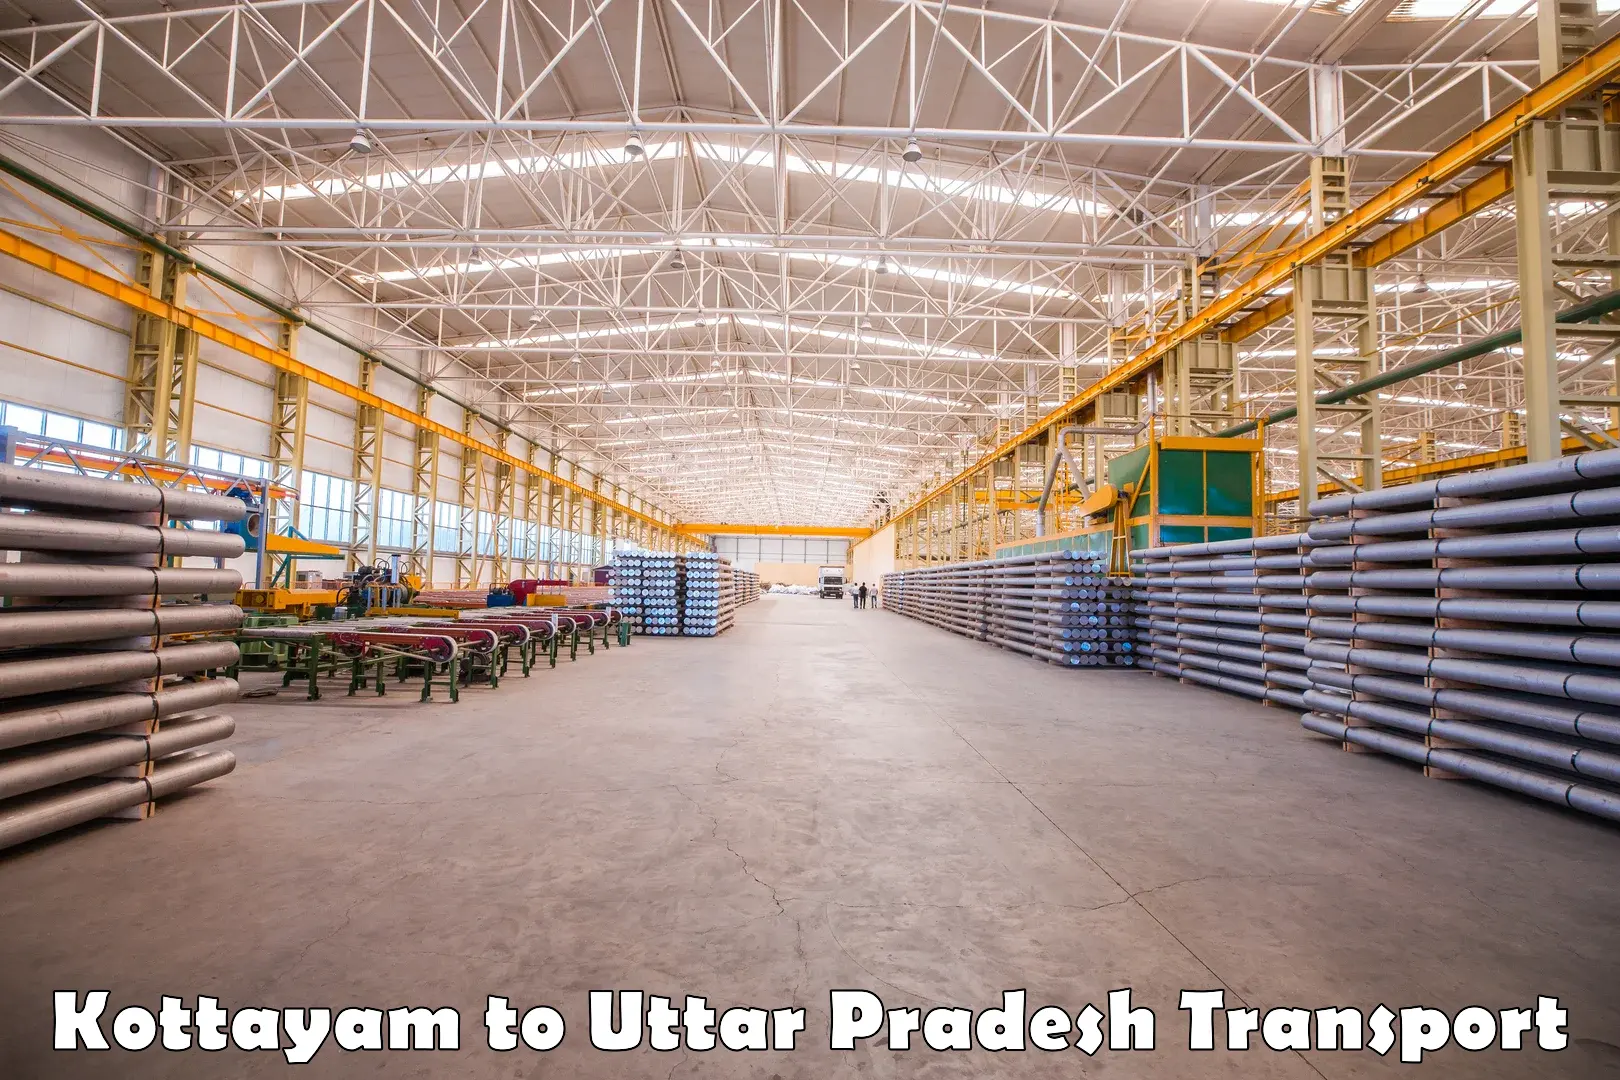 Truck transport companies in India Kottayam to Kurebhar